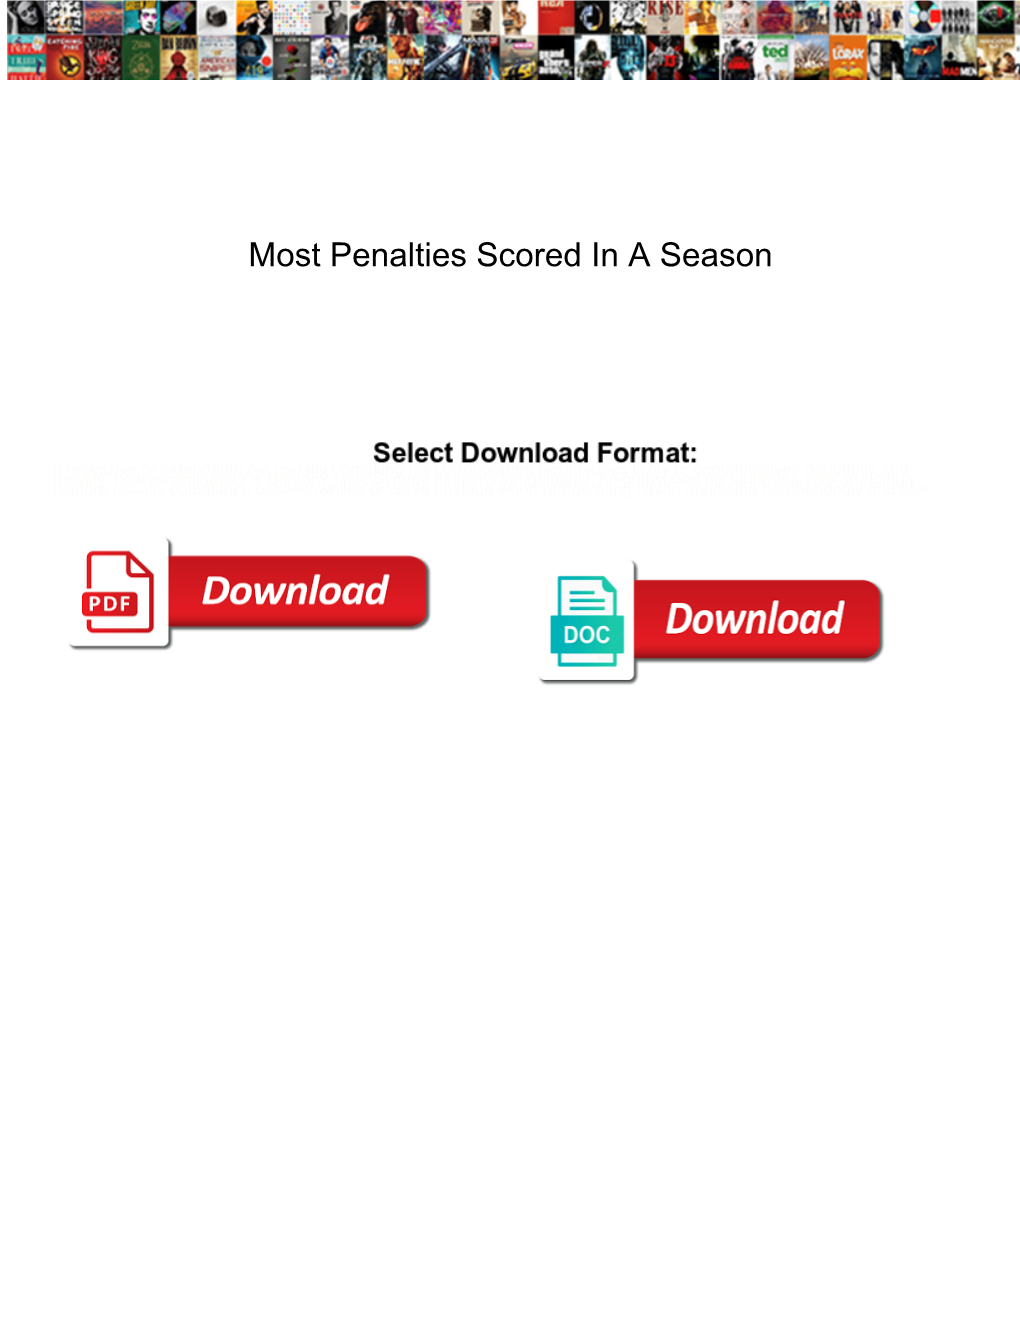 Most Penalties Scored in a Season